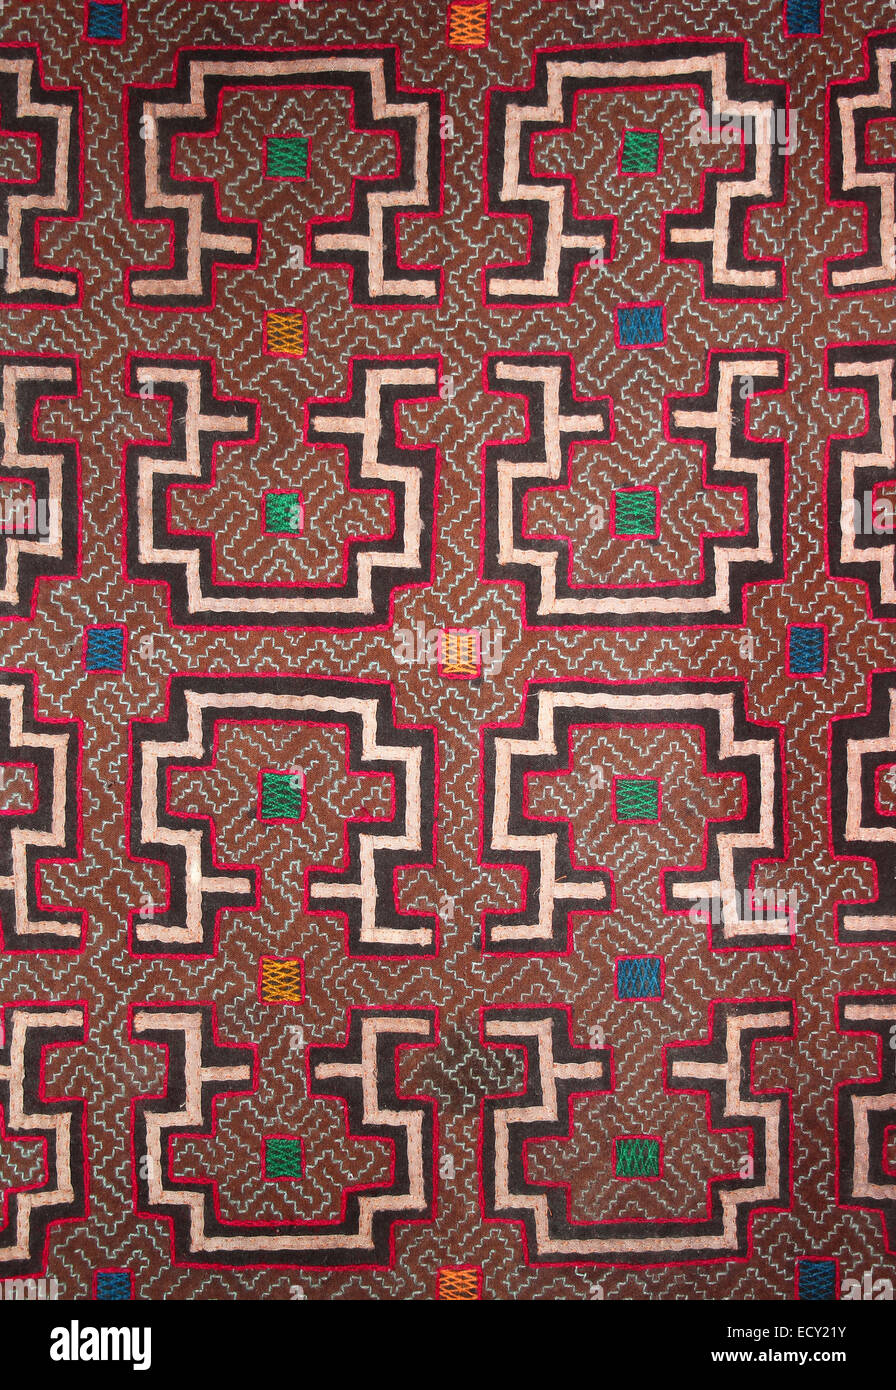 Des motifs géométriques linéaires complexes des Indiens Shipibo, une grande tribu de l'Amazonie péruvienne Banque D'Images